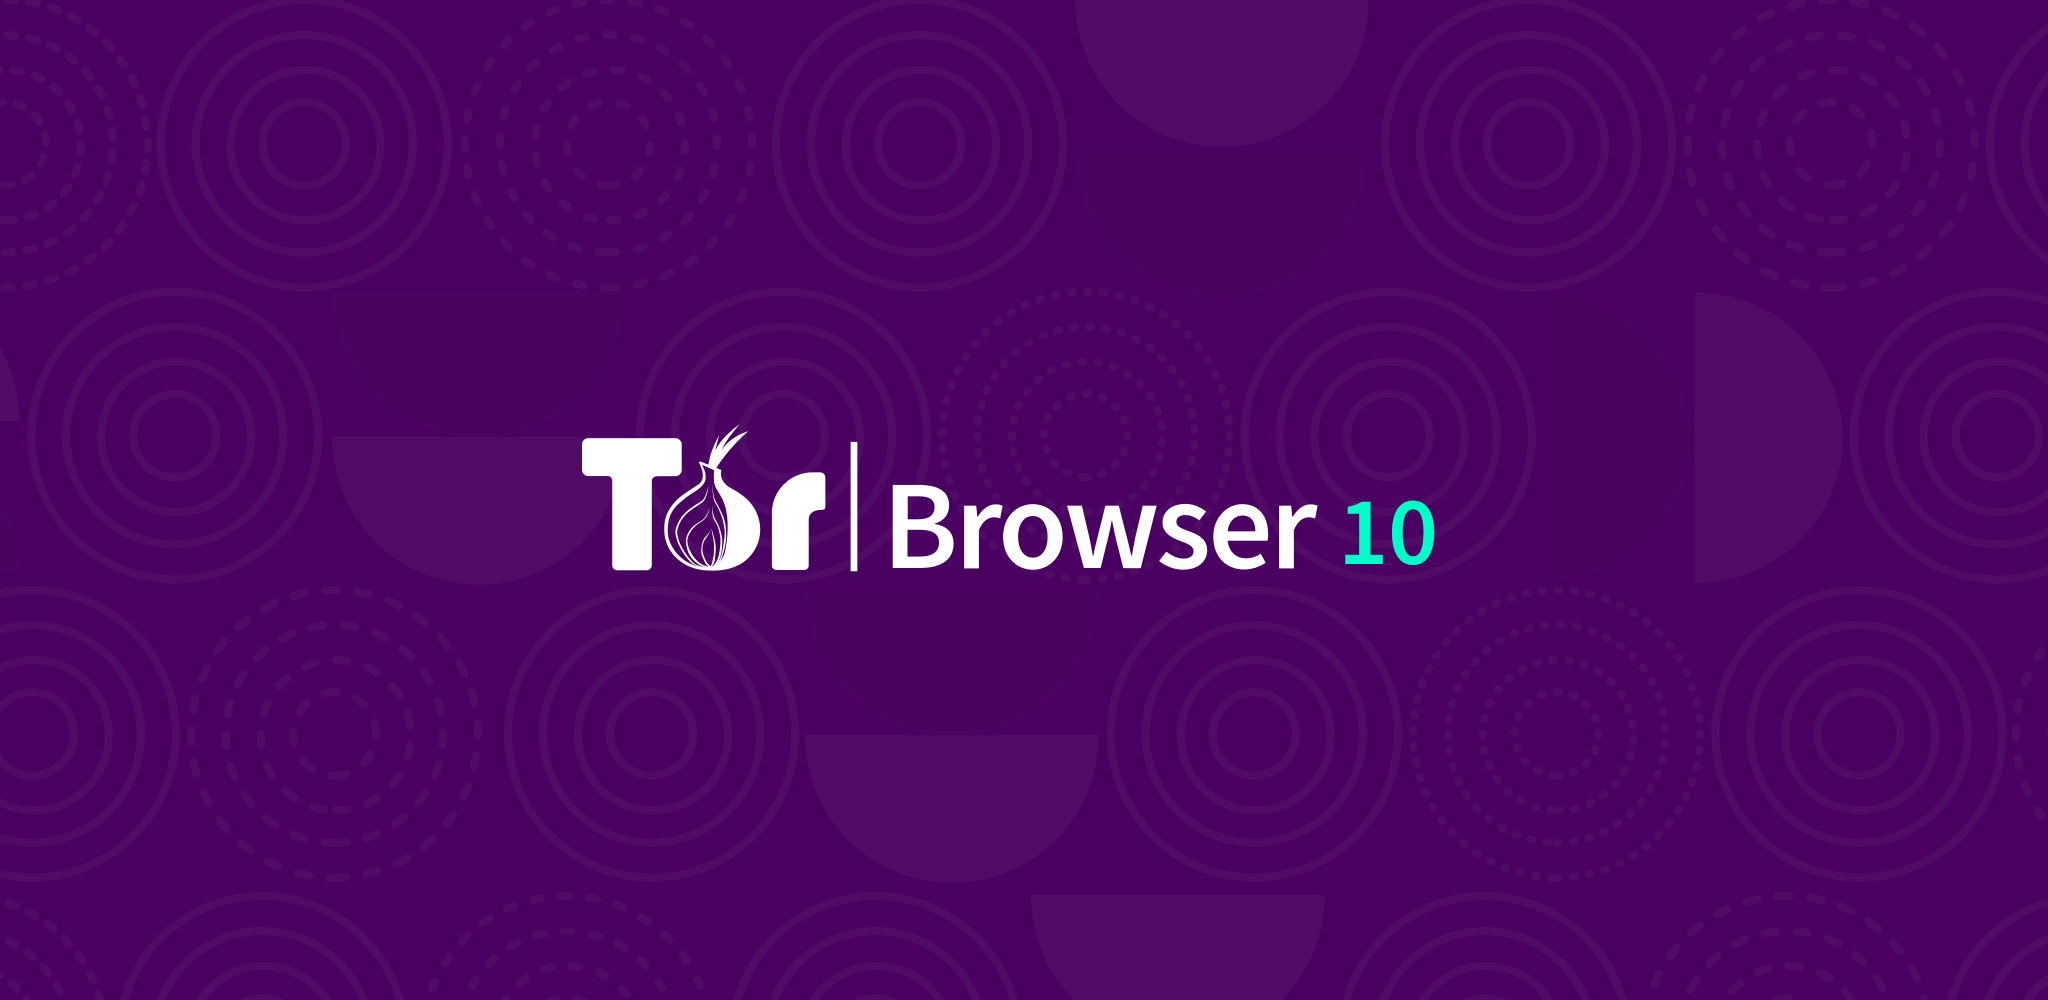 Tor browser с луковицей mega луковица браузер тор mega